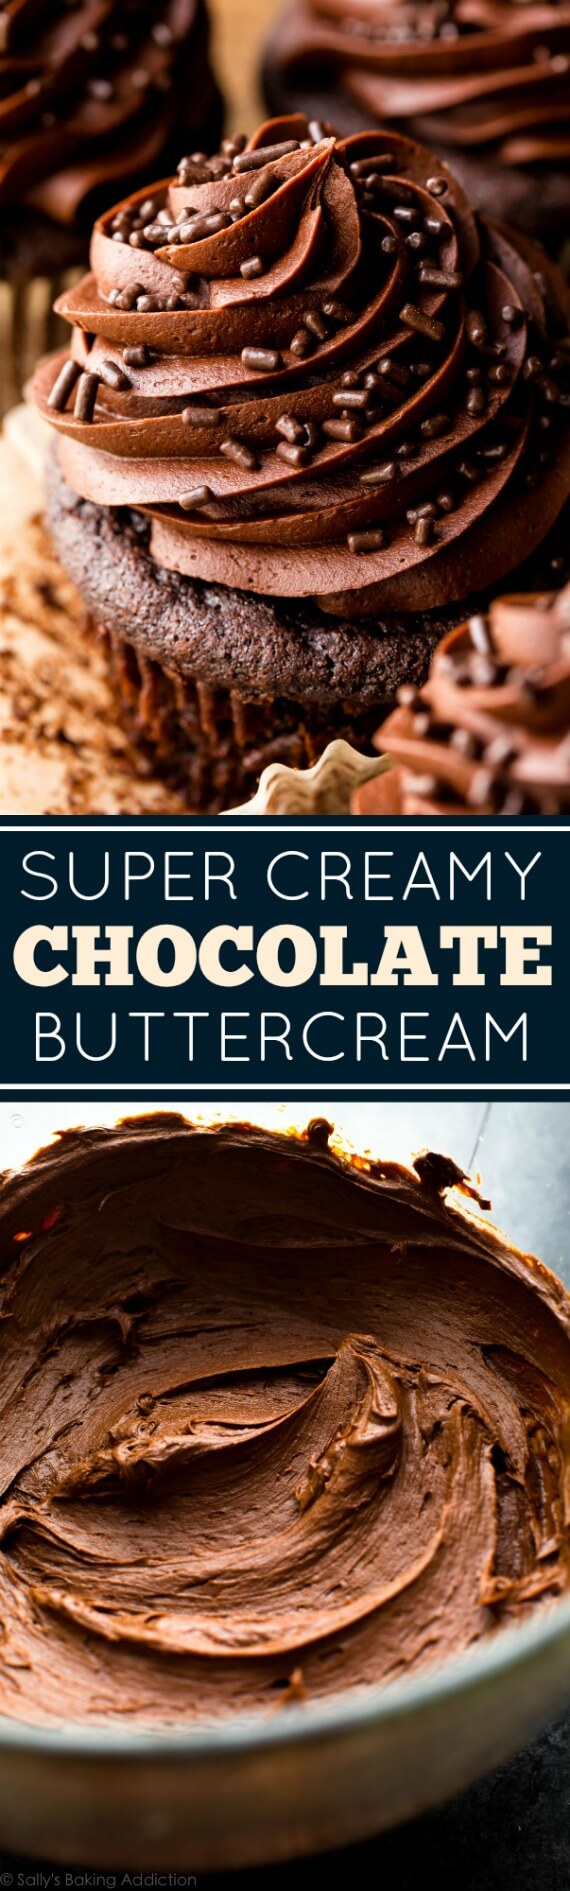 Recette de crème au beurre au chocolat délicieusement douce, crémeuse, soyeuse et facile! sallysbakingaddiction.com